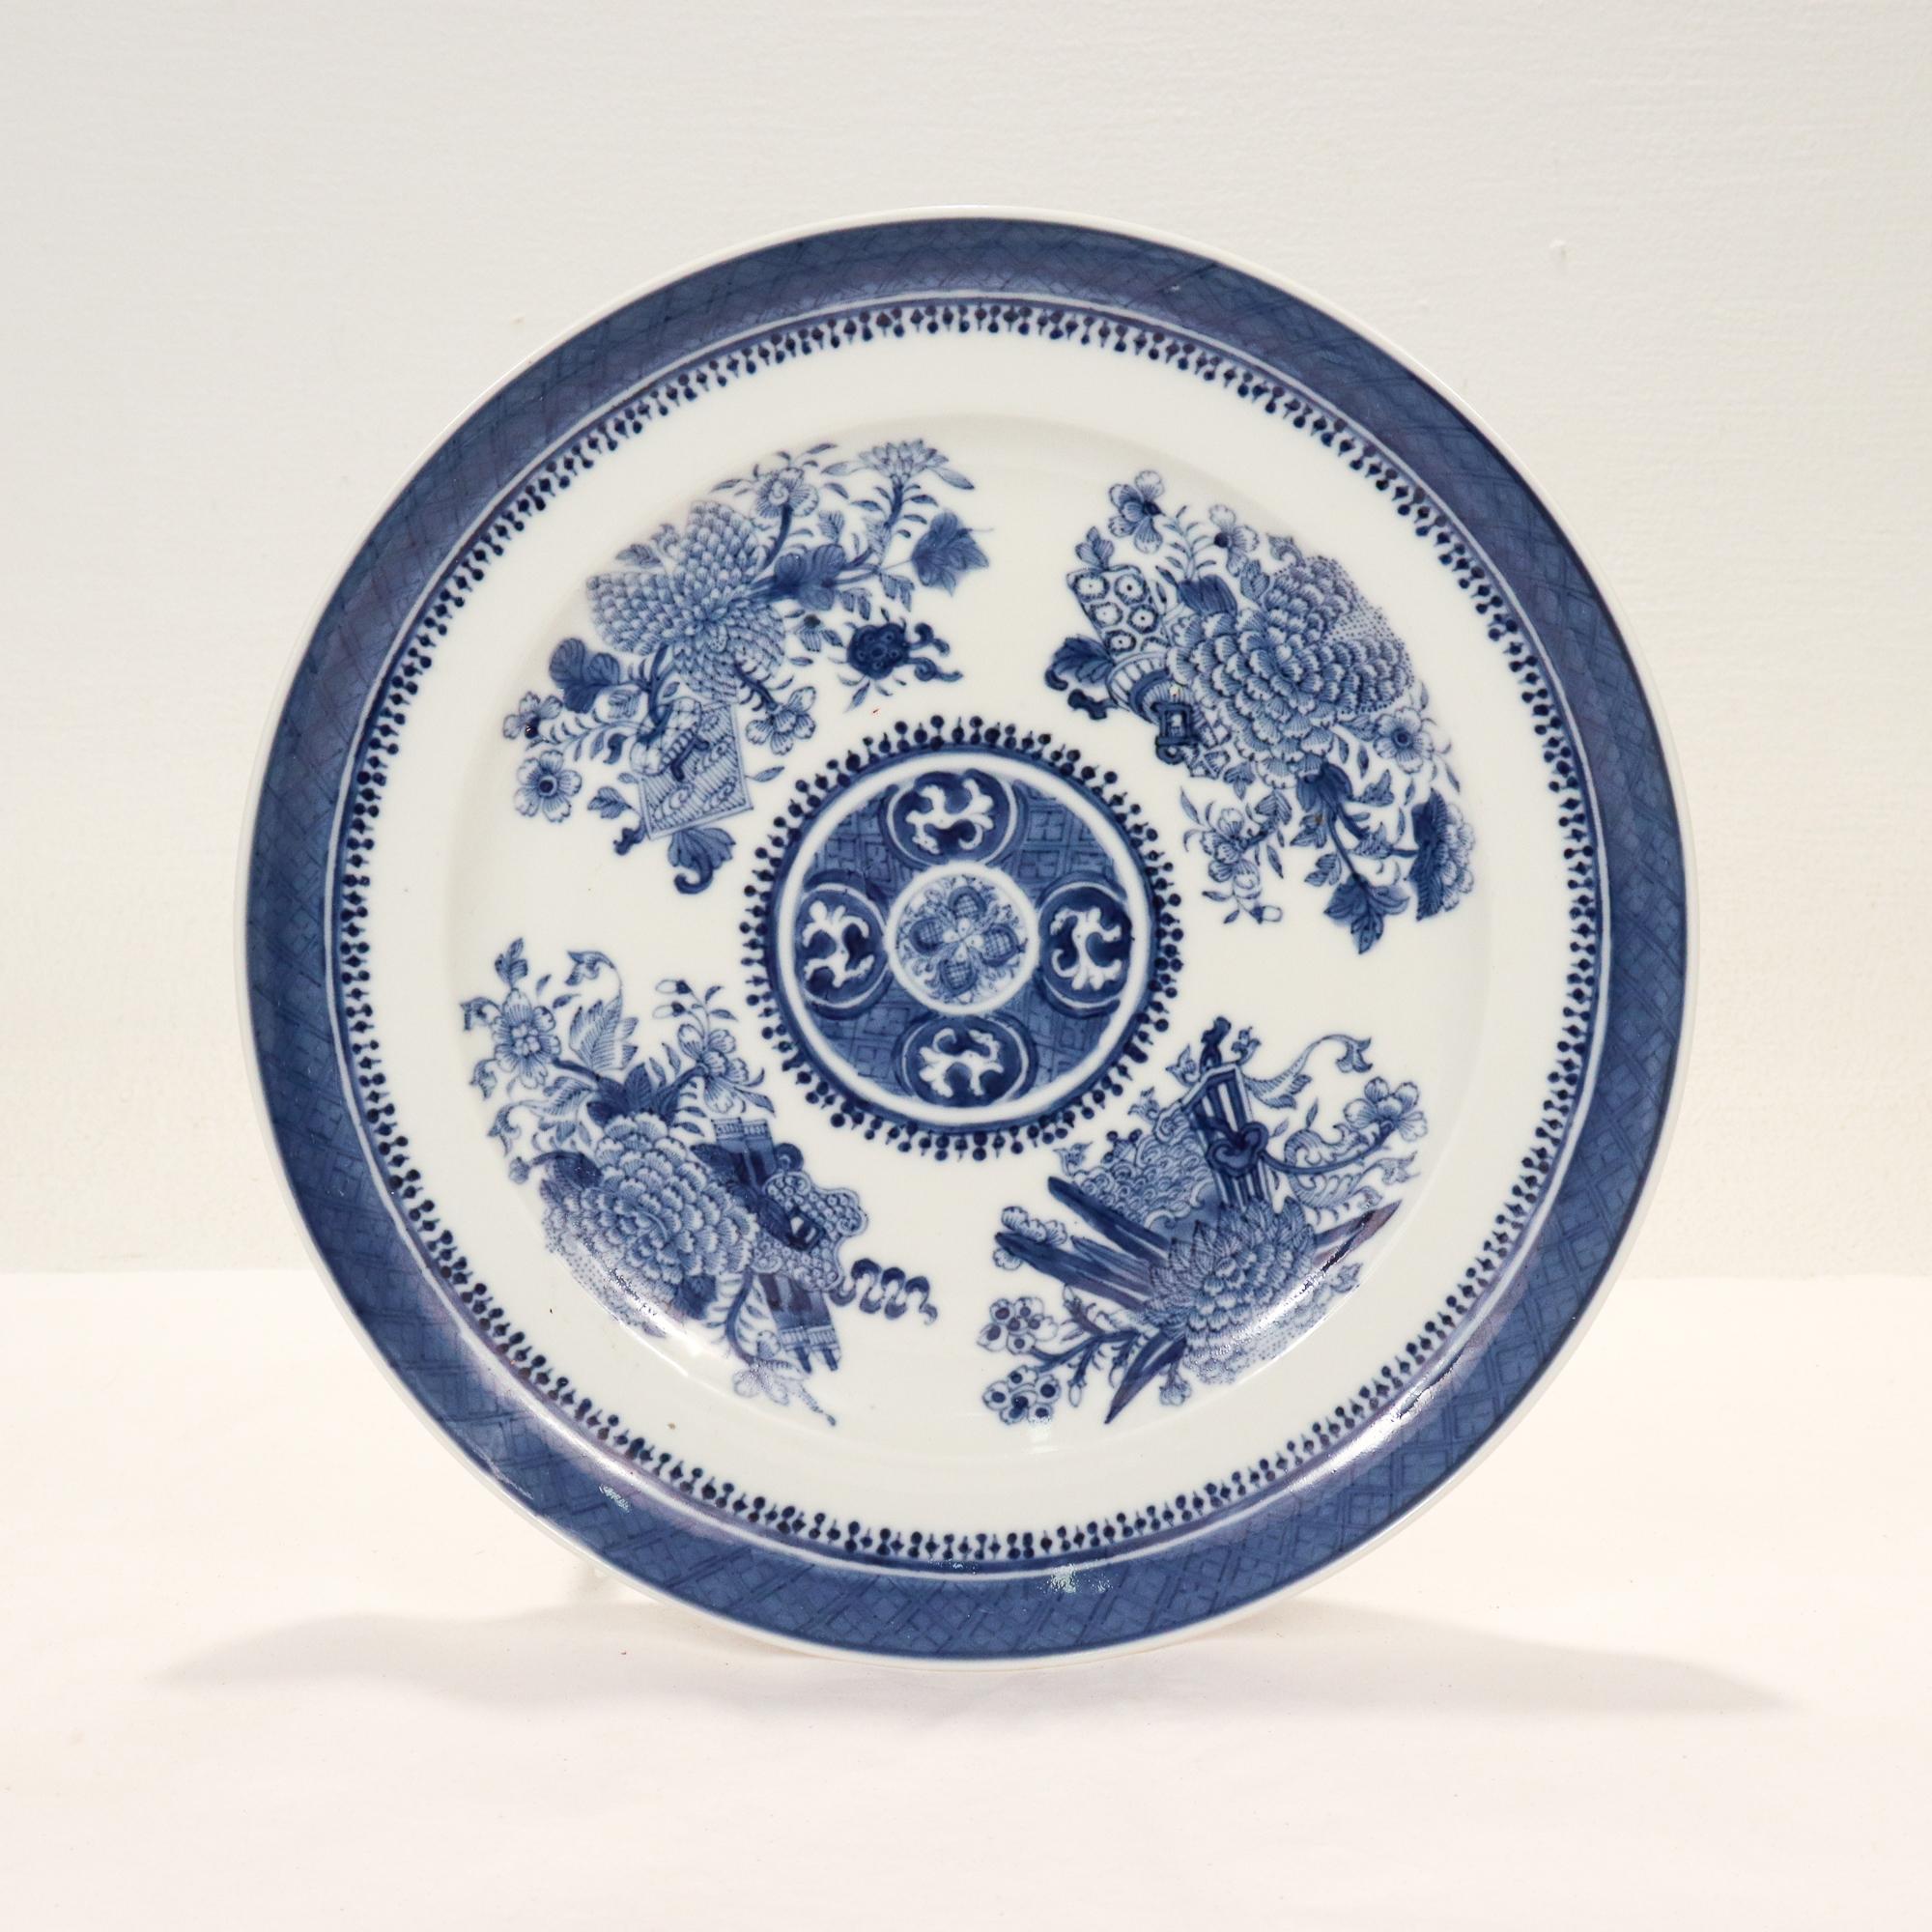 Ein feiner antiker chinesischer Export-Porzellanteller mit dem Fitzhugh-Muster.

Dekoriert in Unterglasurblau mit floralen Verzierungen auf der Vorderseite und einer Umrandung am Rand mit einem sich wiederholenden Rautenmuster.

Einfach ein